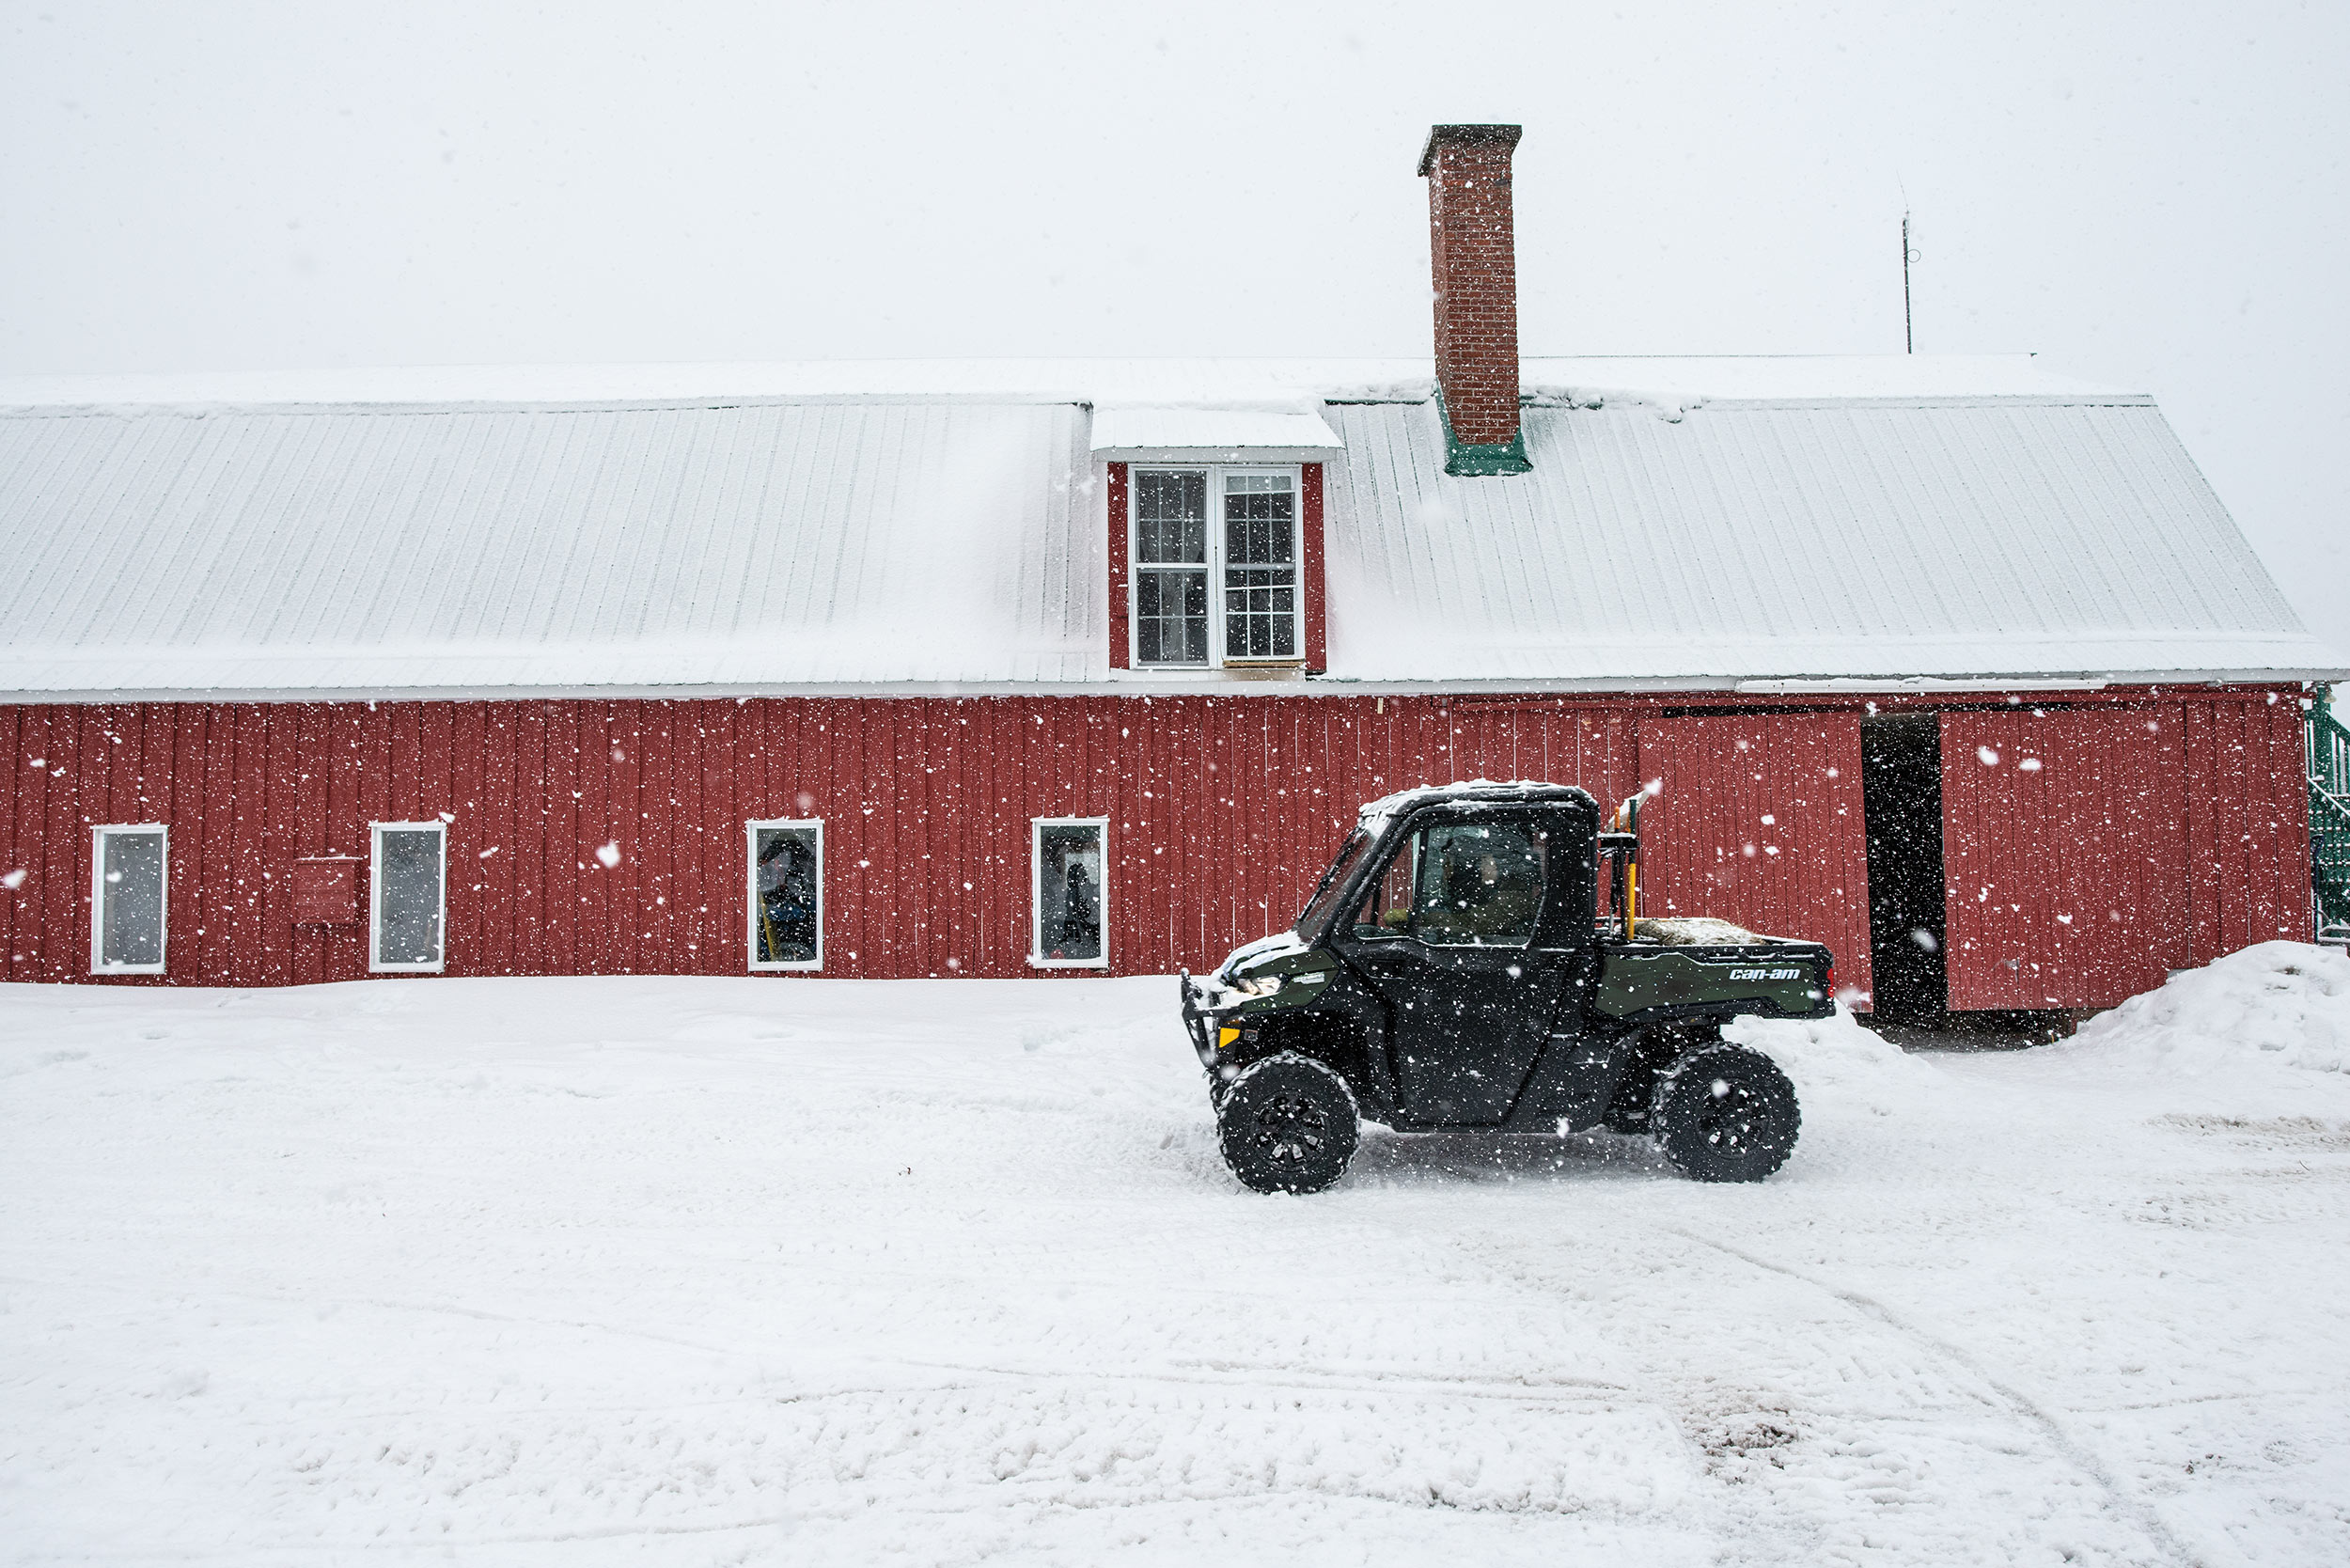 Traxter sur la neige dans une ferme